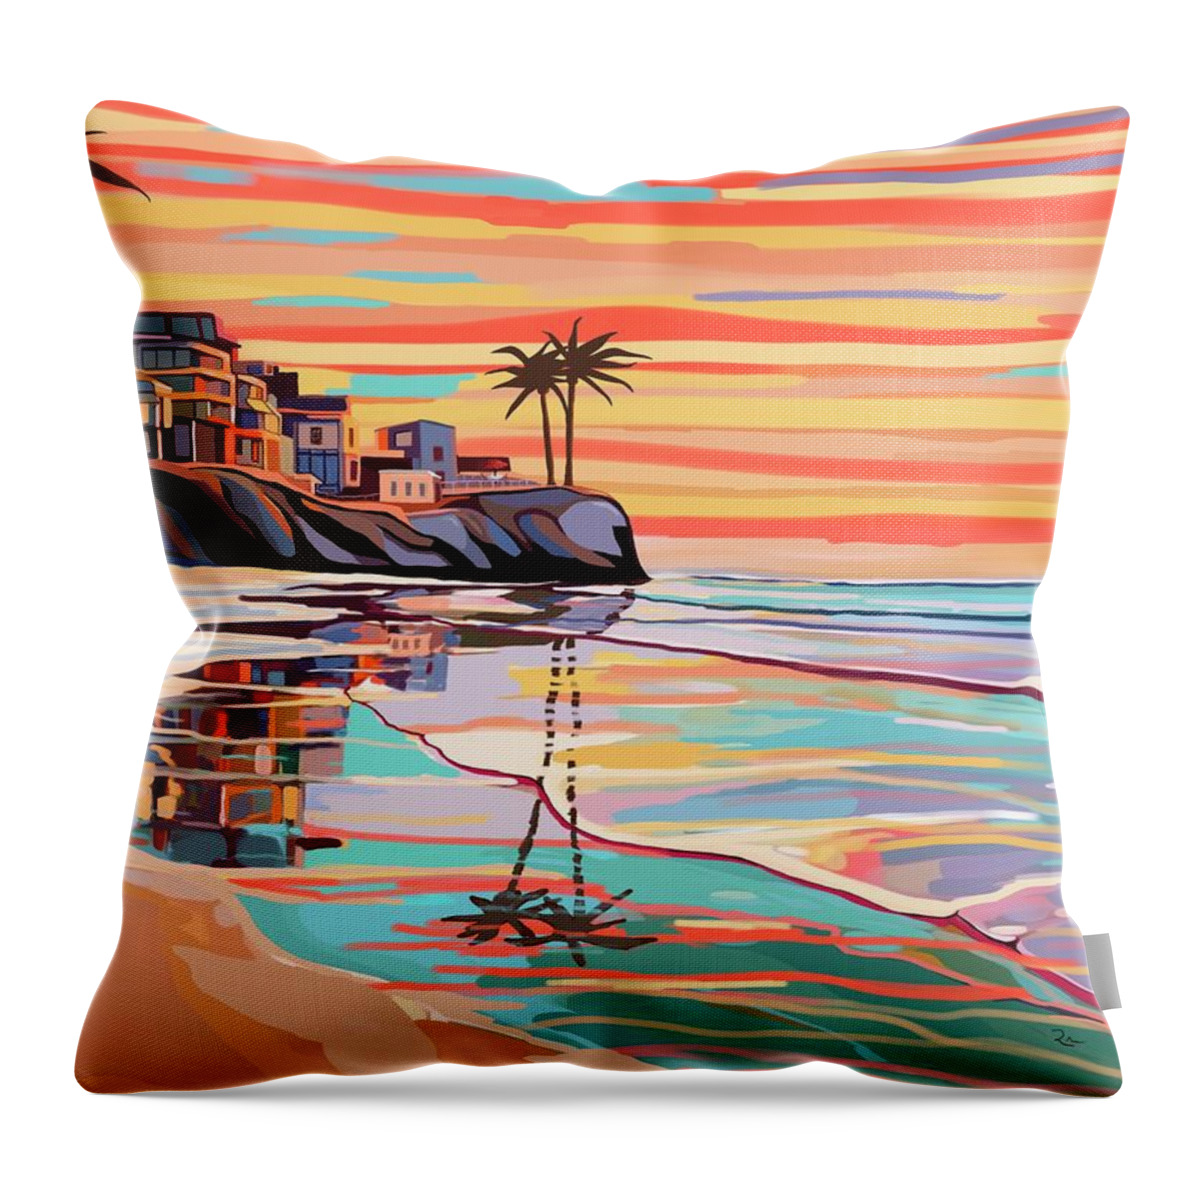 Beach Throw Pillow featuring the digital art Sunset Beach by Mark Ross